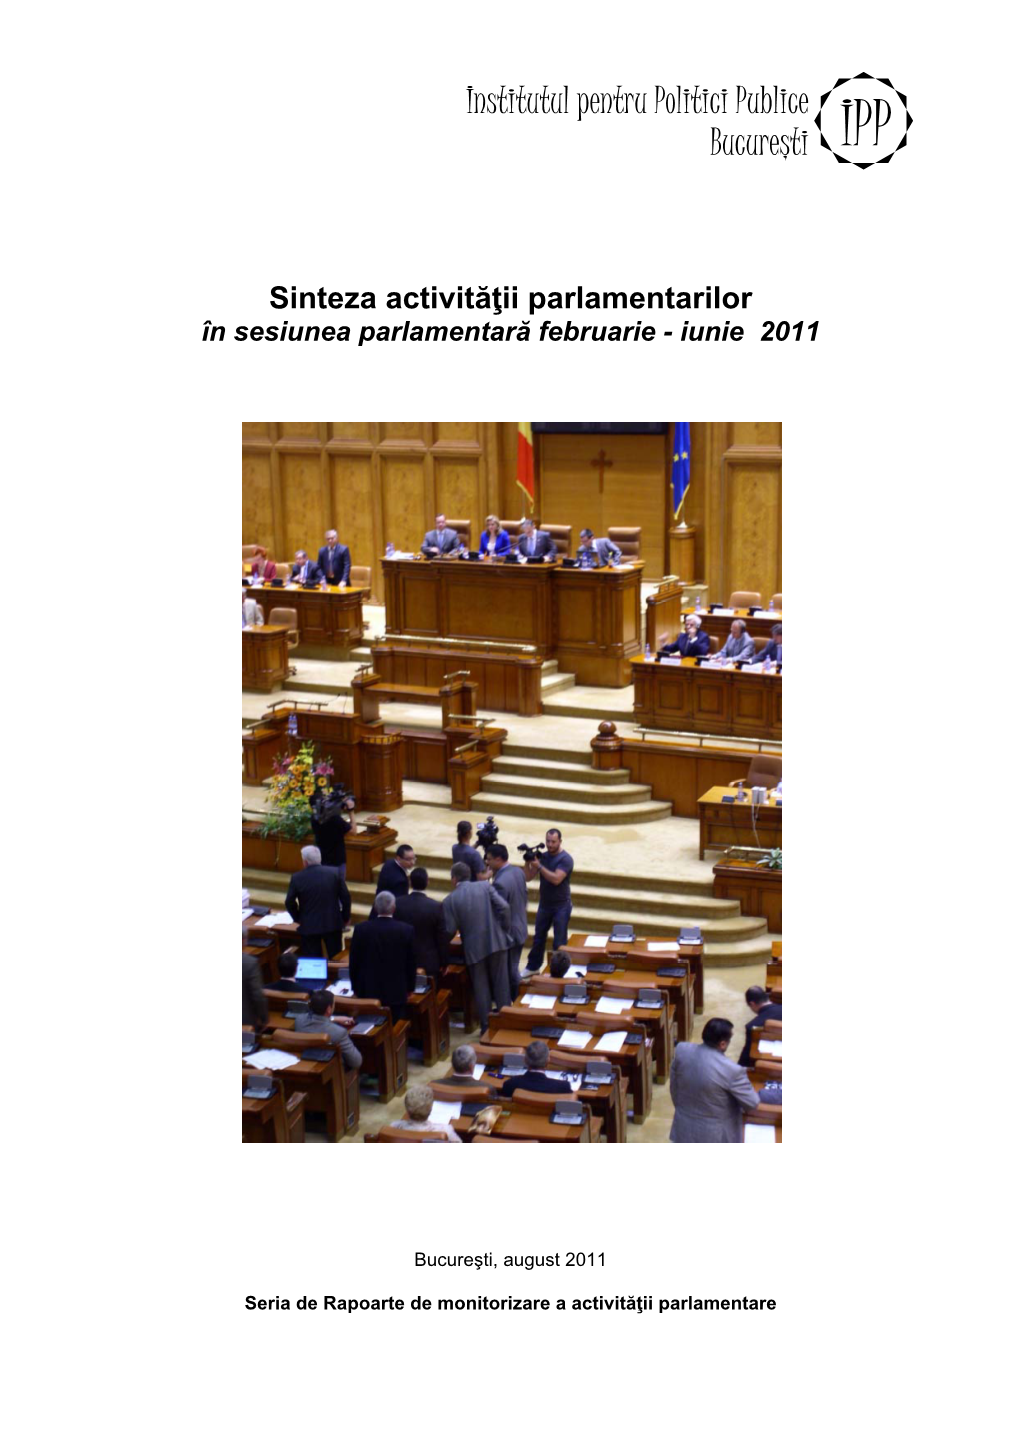 IPP Asupra Activităţii Parlamentare Şi Este Co-Finanţat De Către CEE TRUST for Civil Society in Central and Eastern Europe and Open Society Institute Din Budapesta